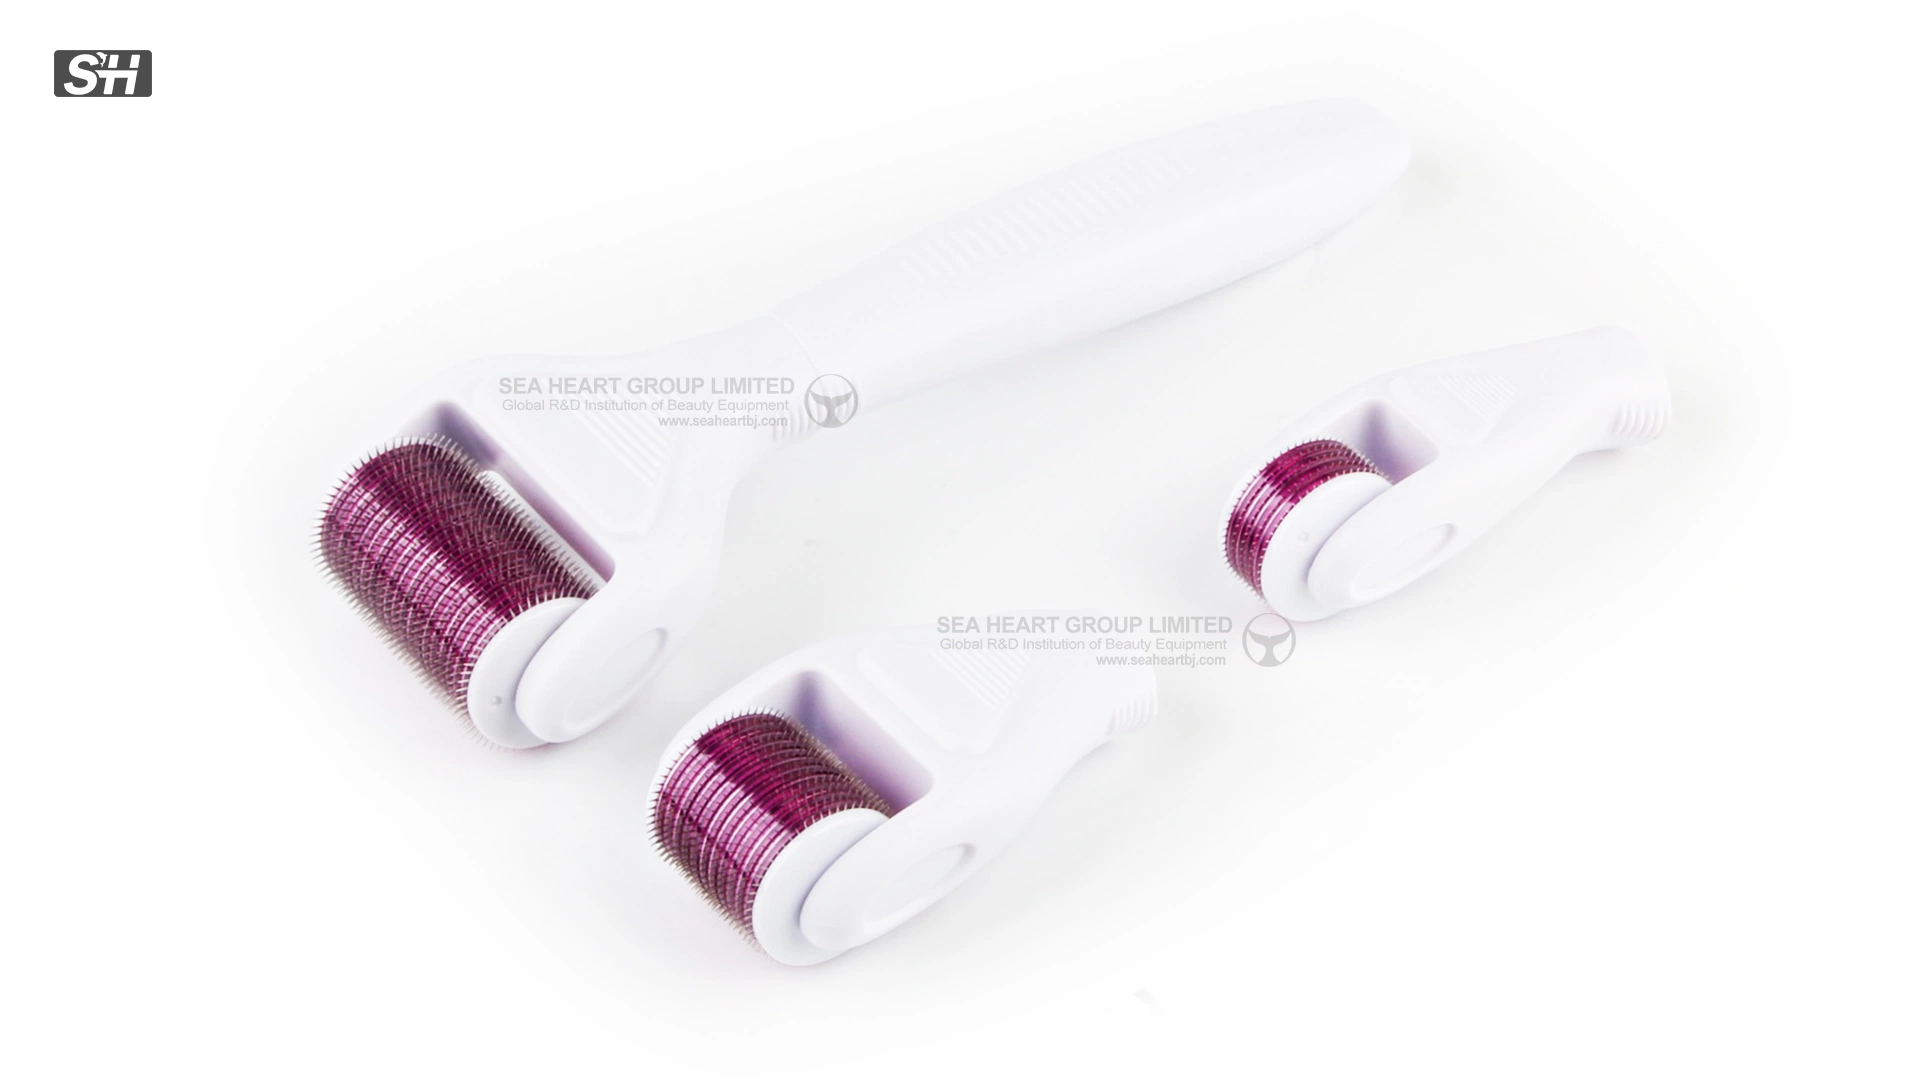 Derma Roller ميكرونيكل تيتانيوم العناية بالبشرة أدوات Micro Derma Roller 4 في 1 مع صندوق للبيع